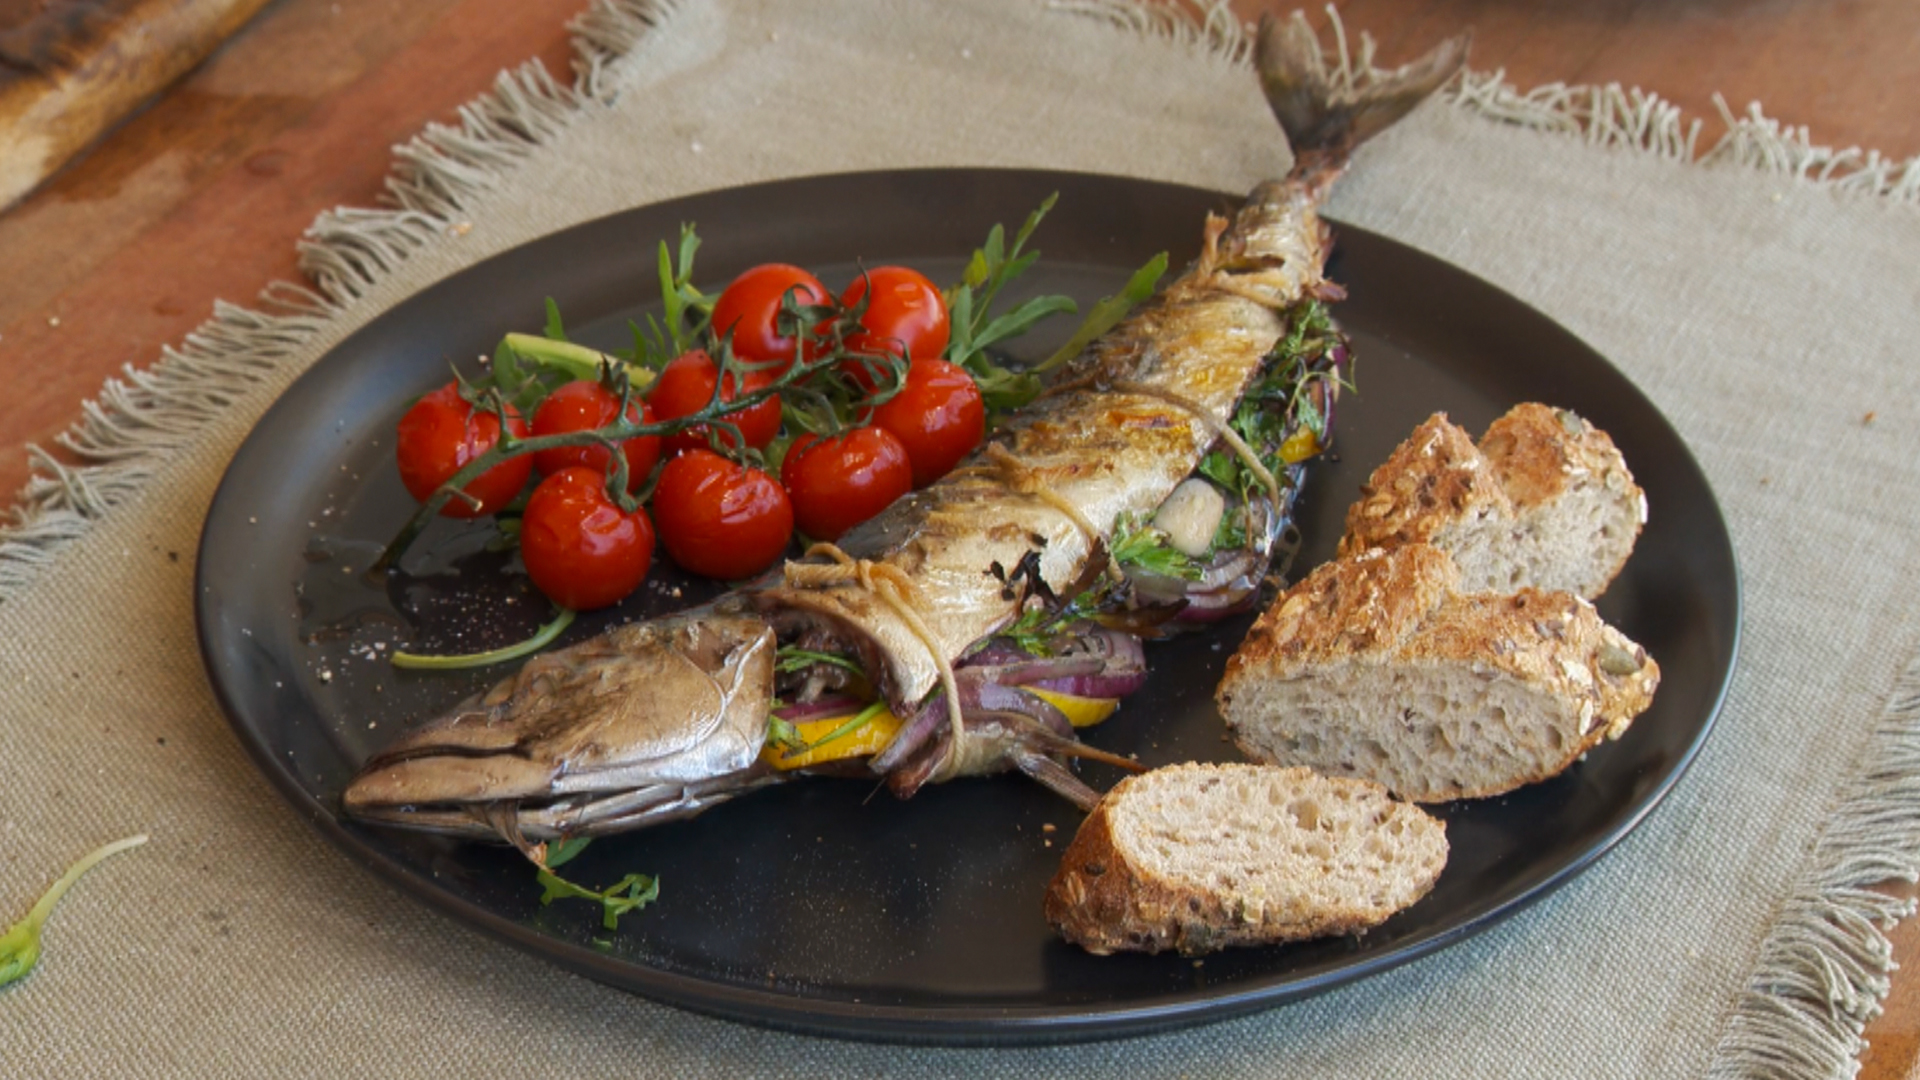 Siësta Observeer Plantkunde BBQ recept Makreel gevuld met anjovis - IK BBQ voor jou | televisieprogramma